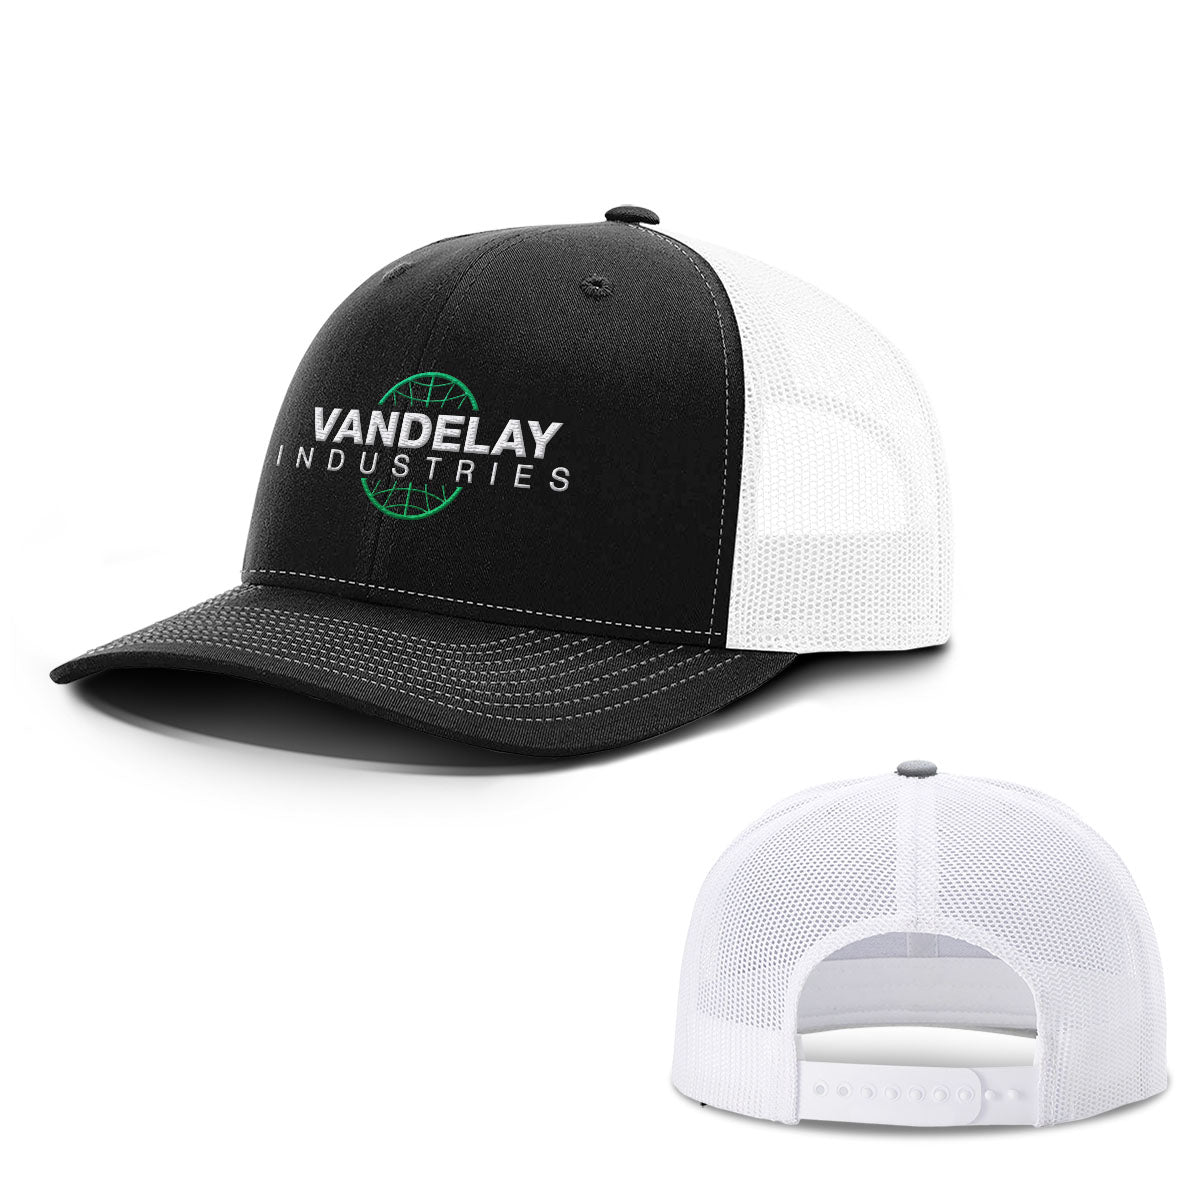 Vandelay Industries Hats - BustedTees.com